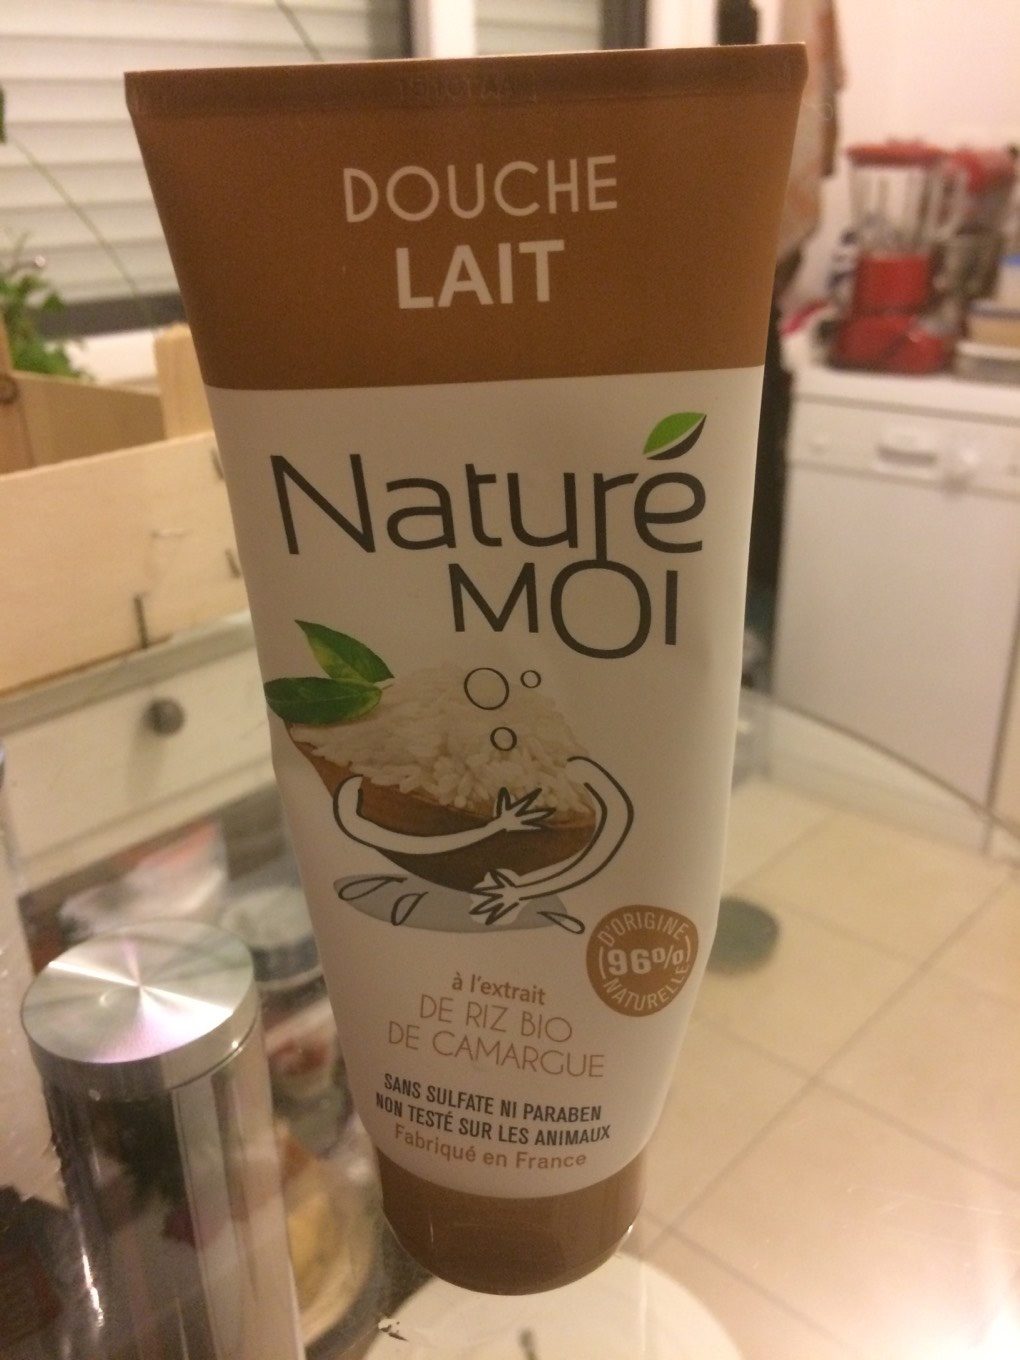 NaturéMOI - Douche Lait Riz Bio / Milch-Dusche Mit Reis - Продукт - fr